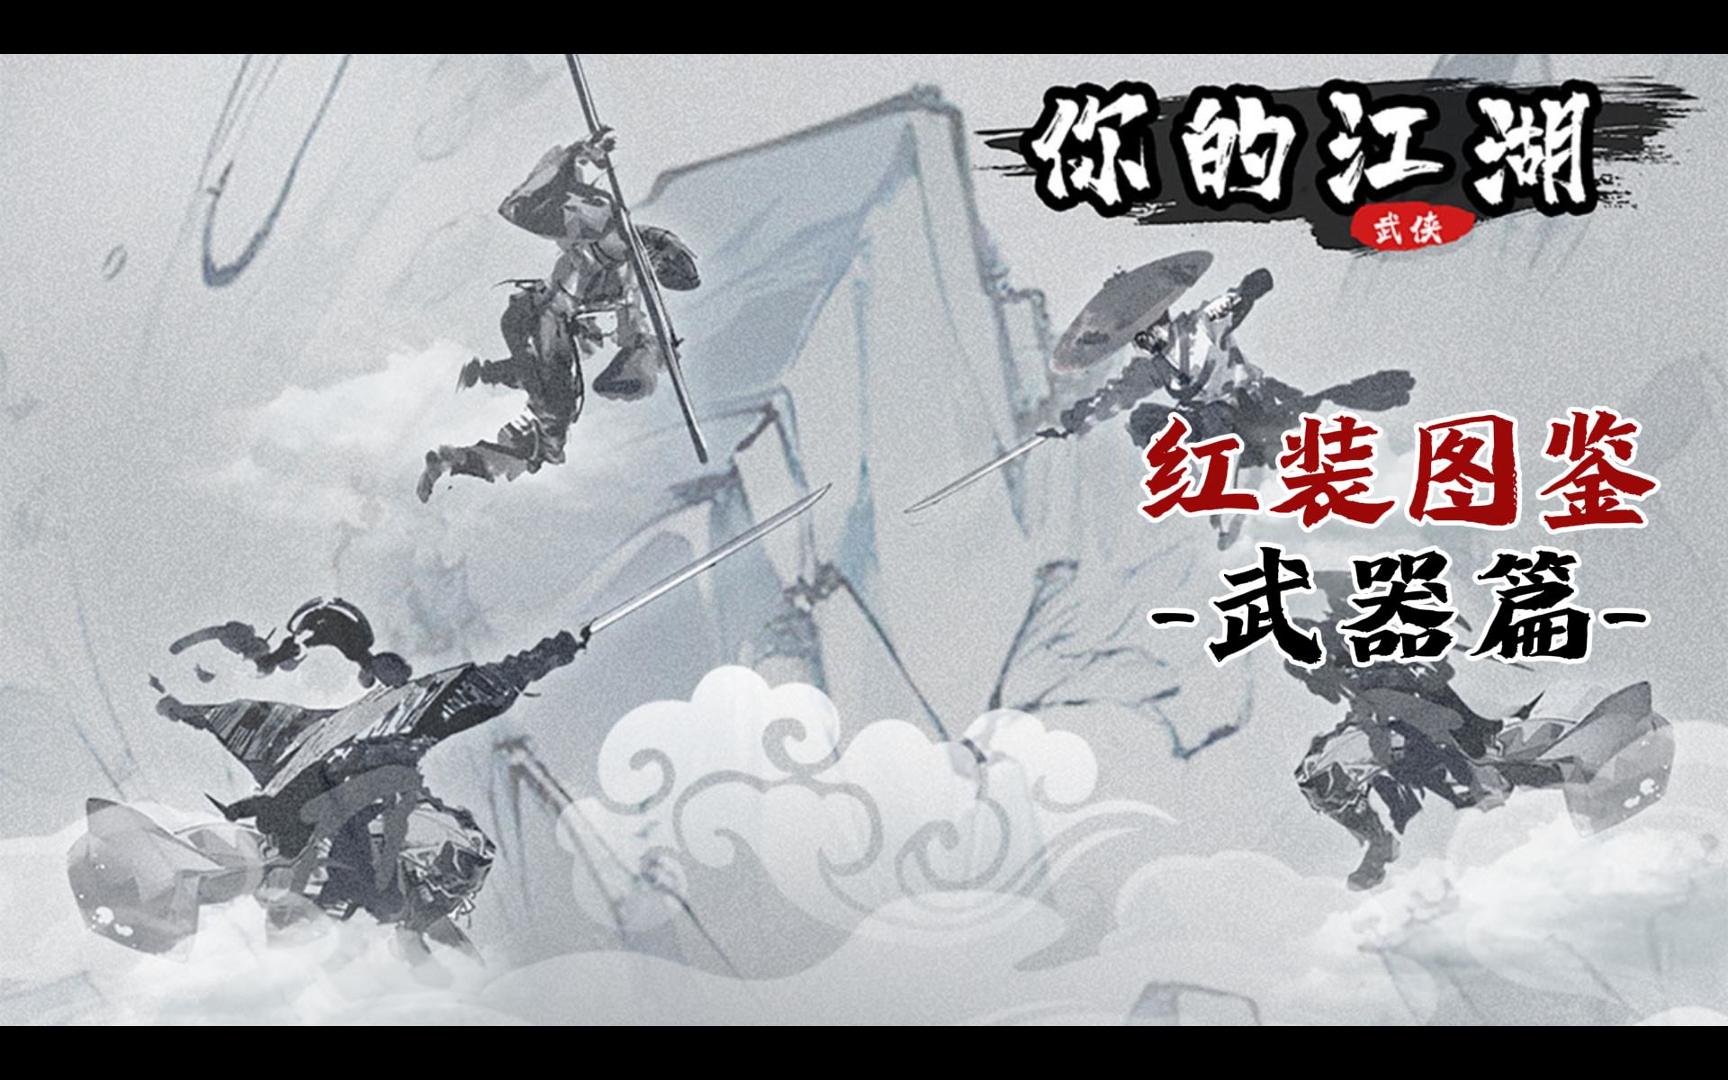 【你的江湖】红武图鉴-武器剑